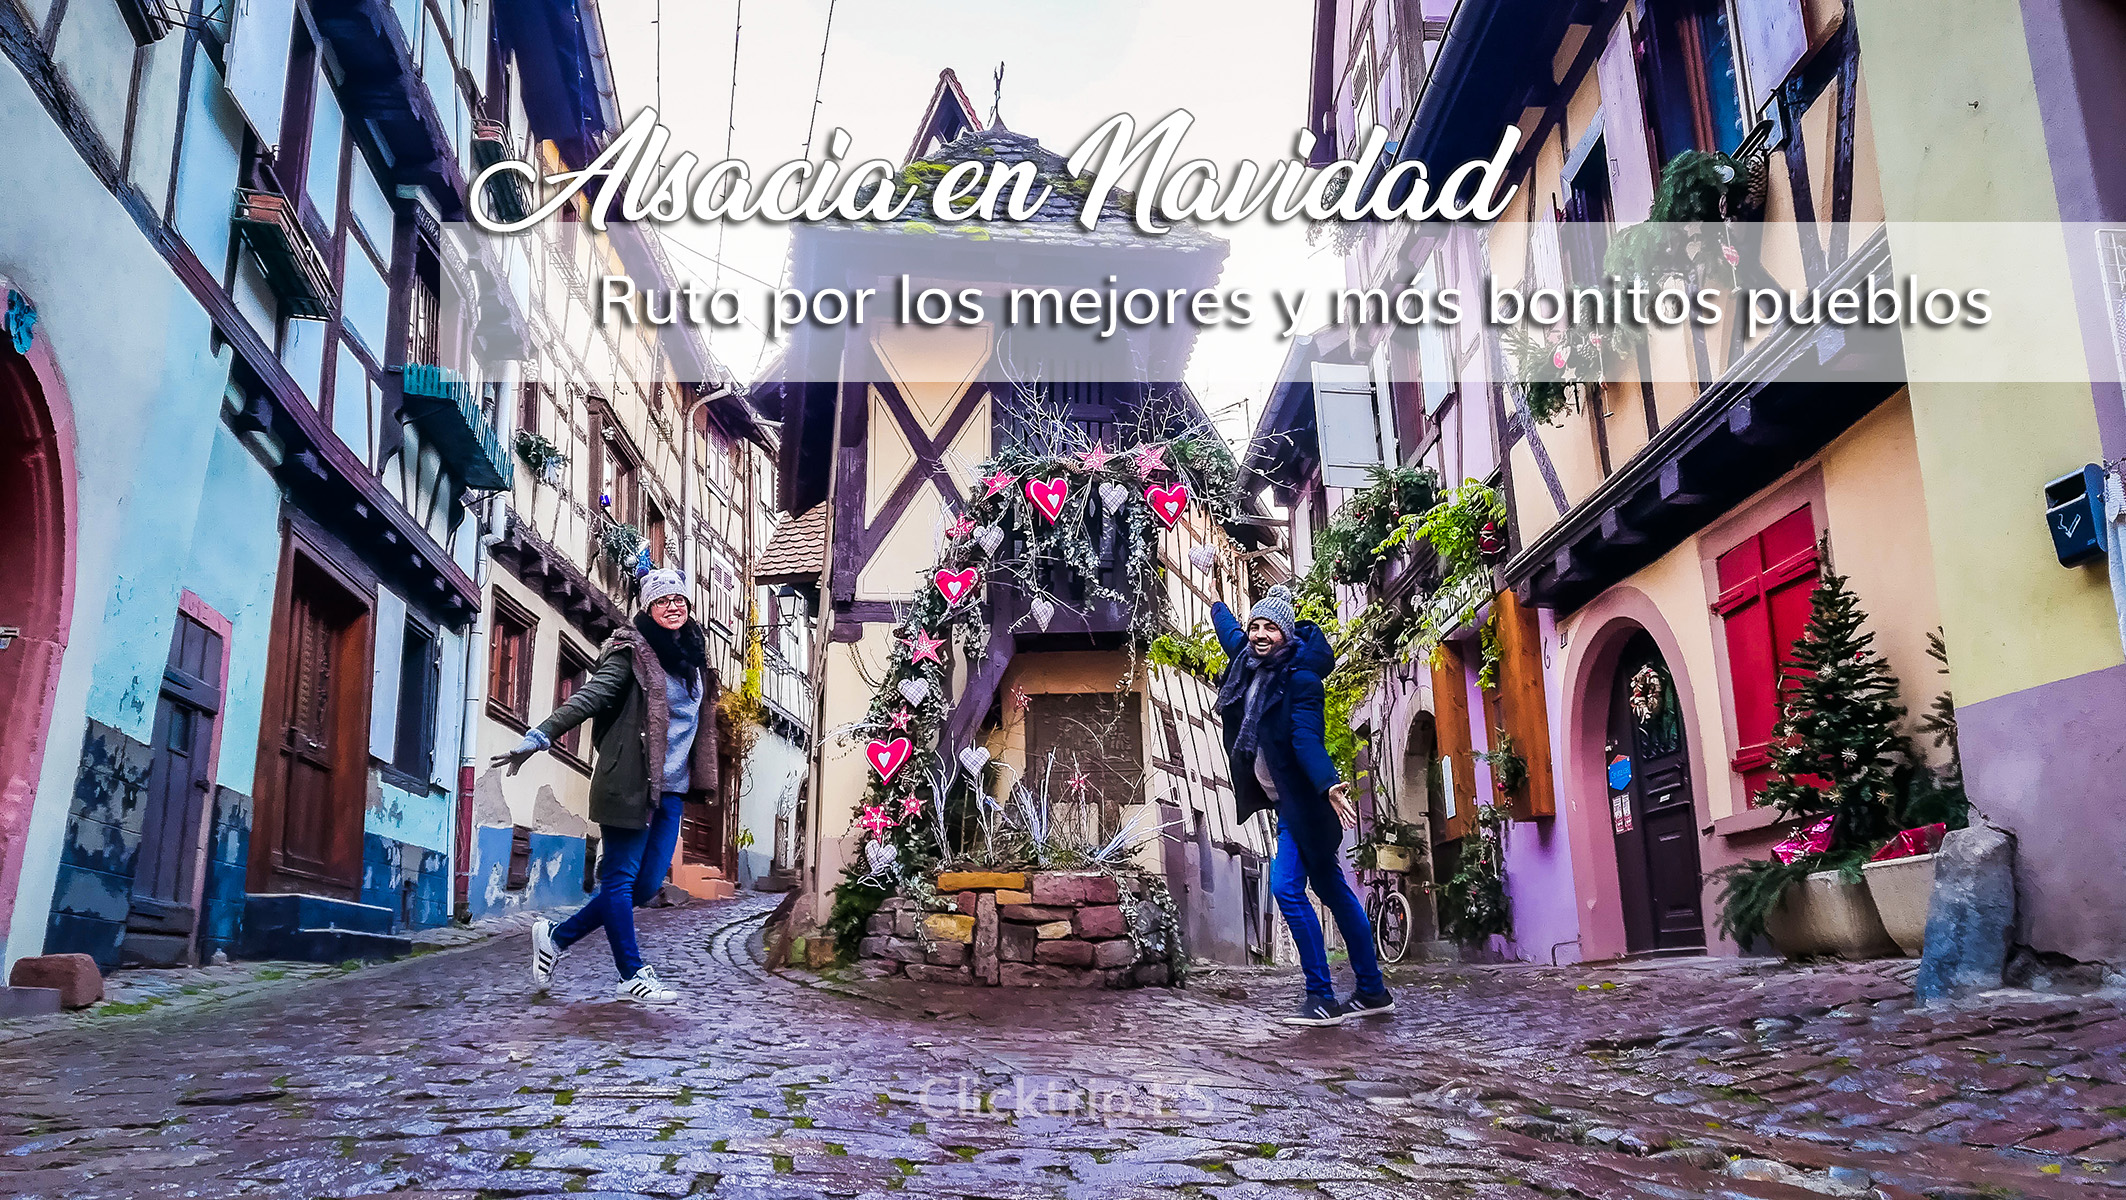 Ruta por los mejores y más bonitos pueblos de Alsacia en Navidad | ClickTrip.ES